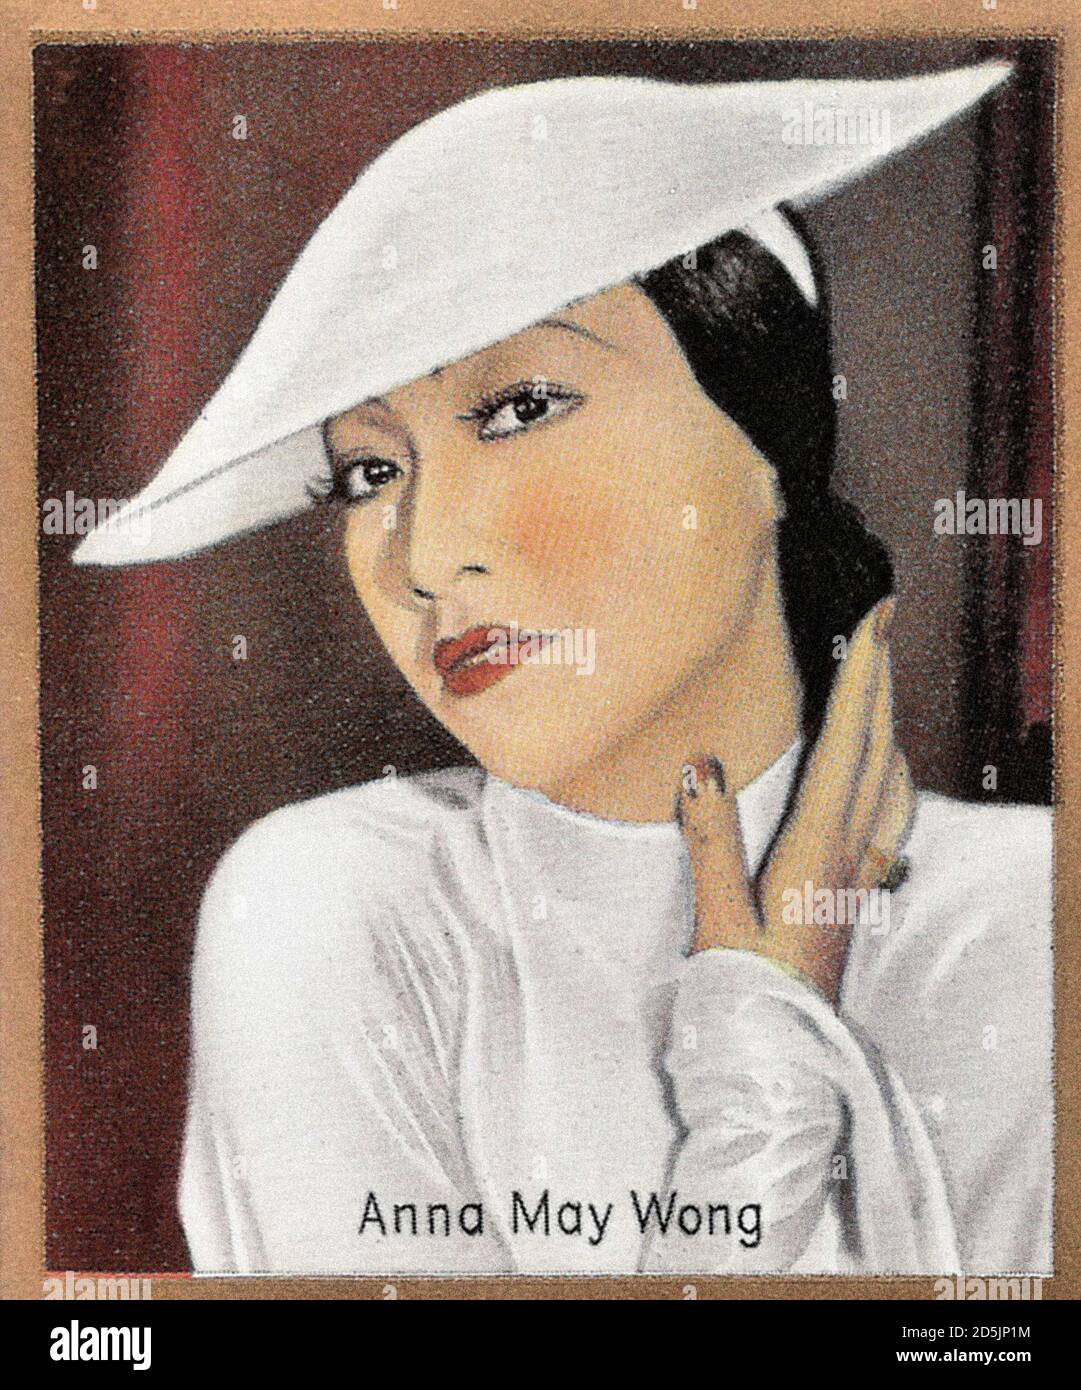 Anna May Wong (née Wong Liu Tsong; 1905 – 1961) est une actrice américaine, considérée comme la première star de cinéma hollywoodien chinois américain Banque D'Images